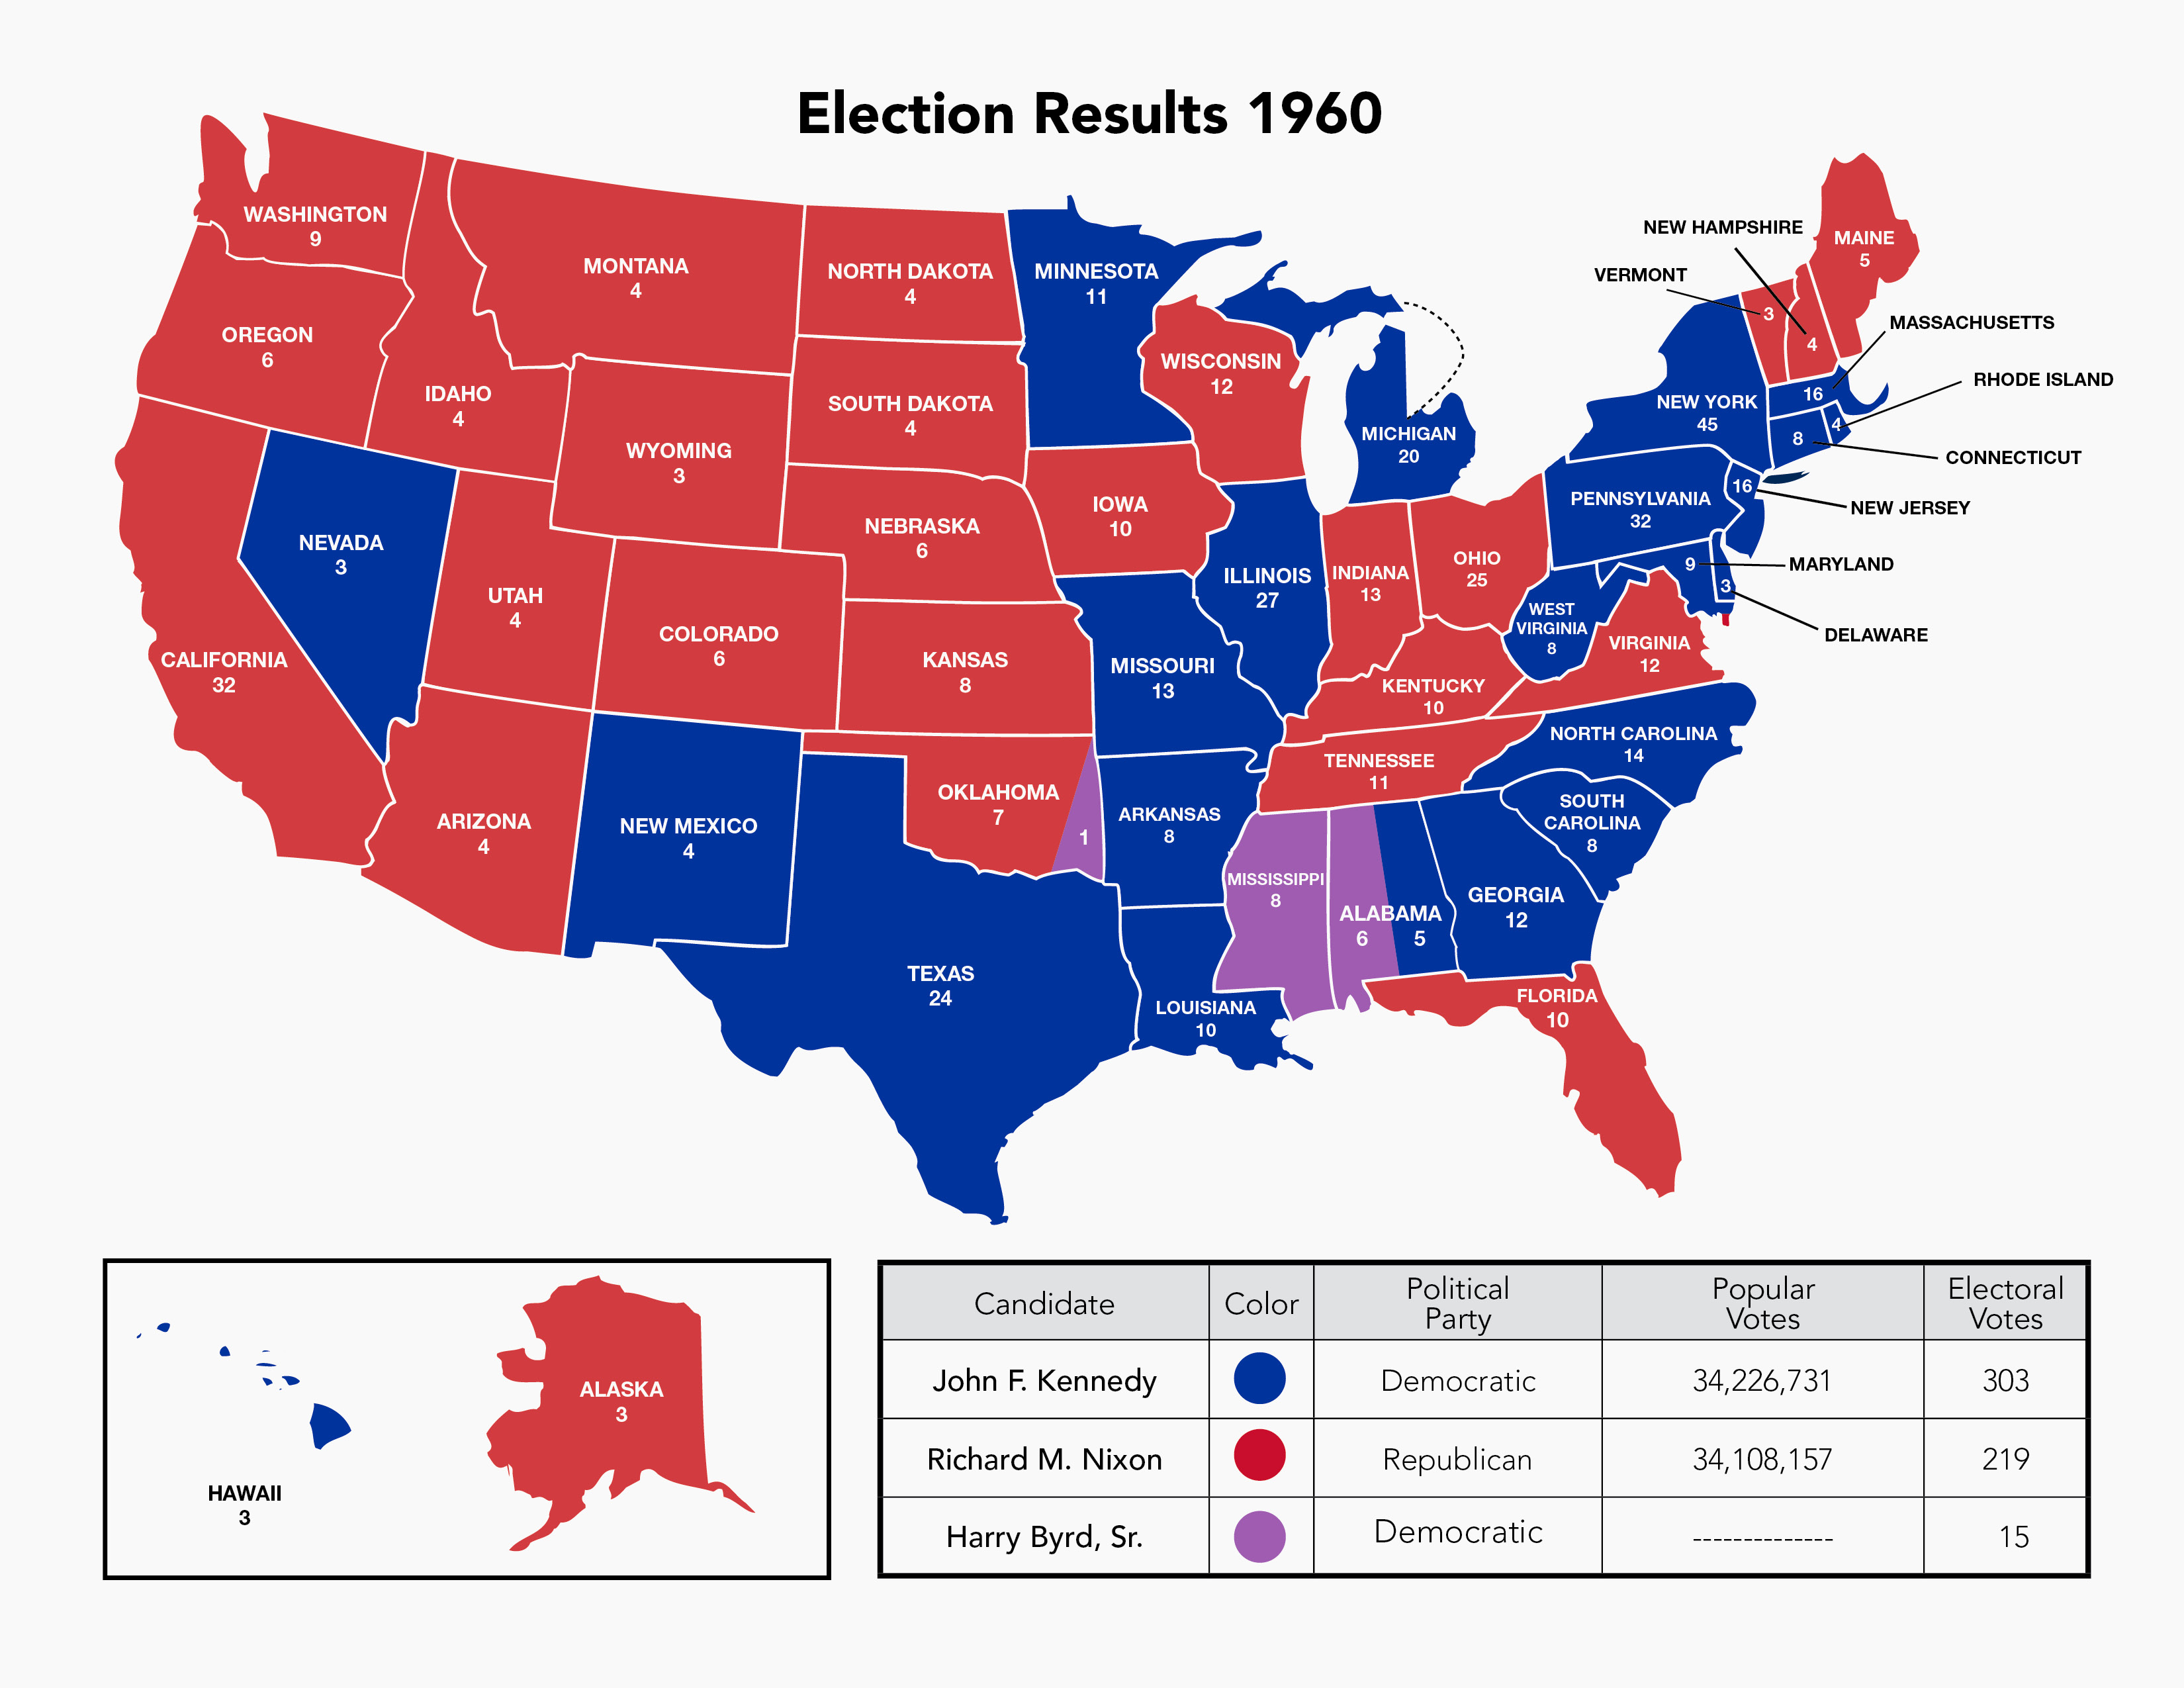 1960 Electoral Map